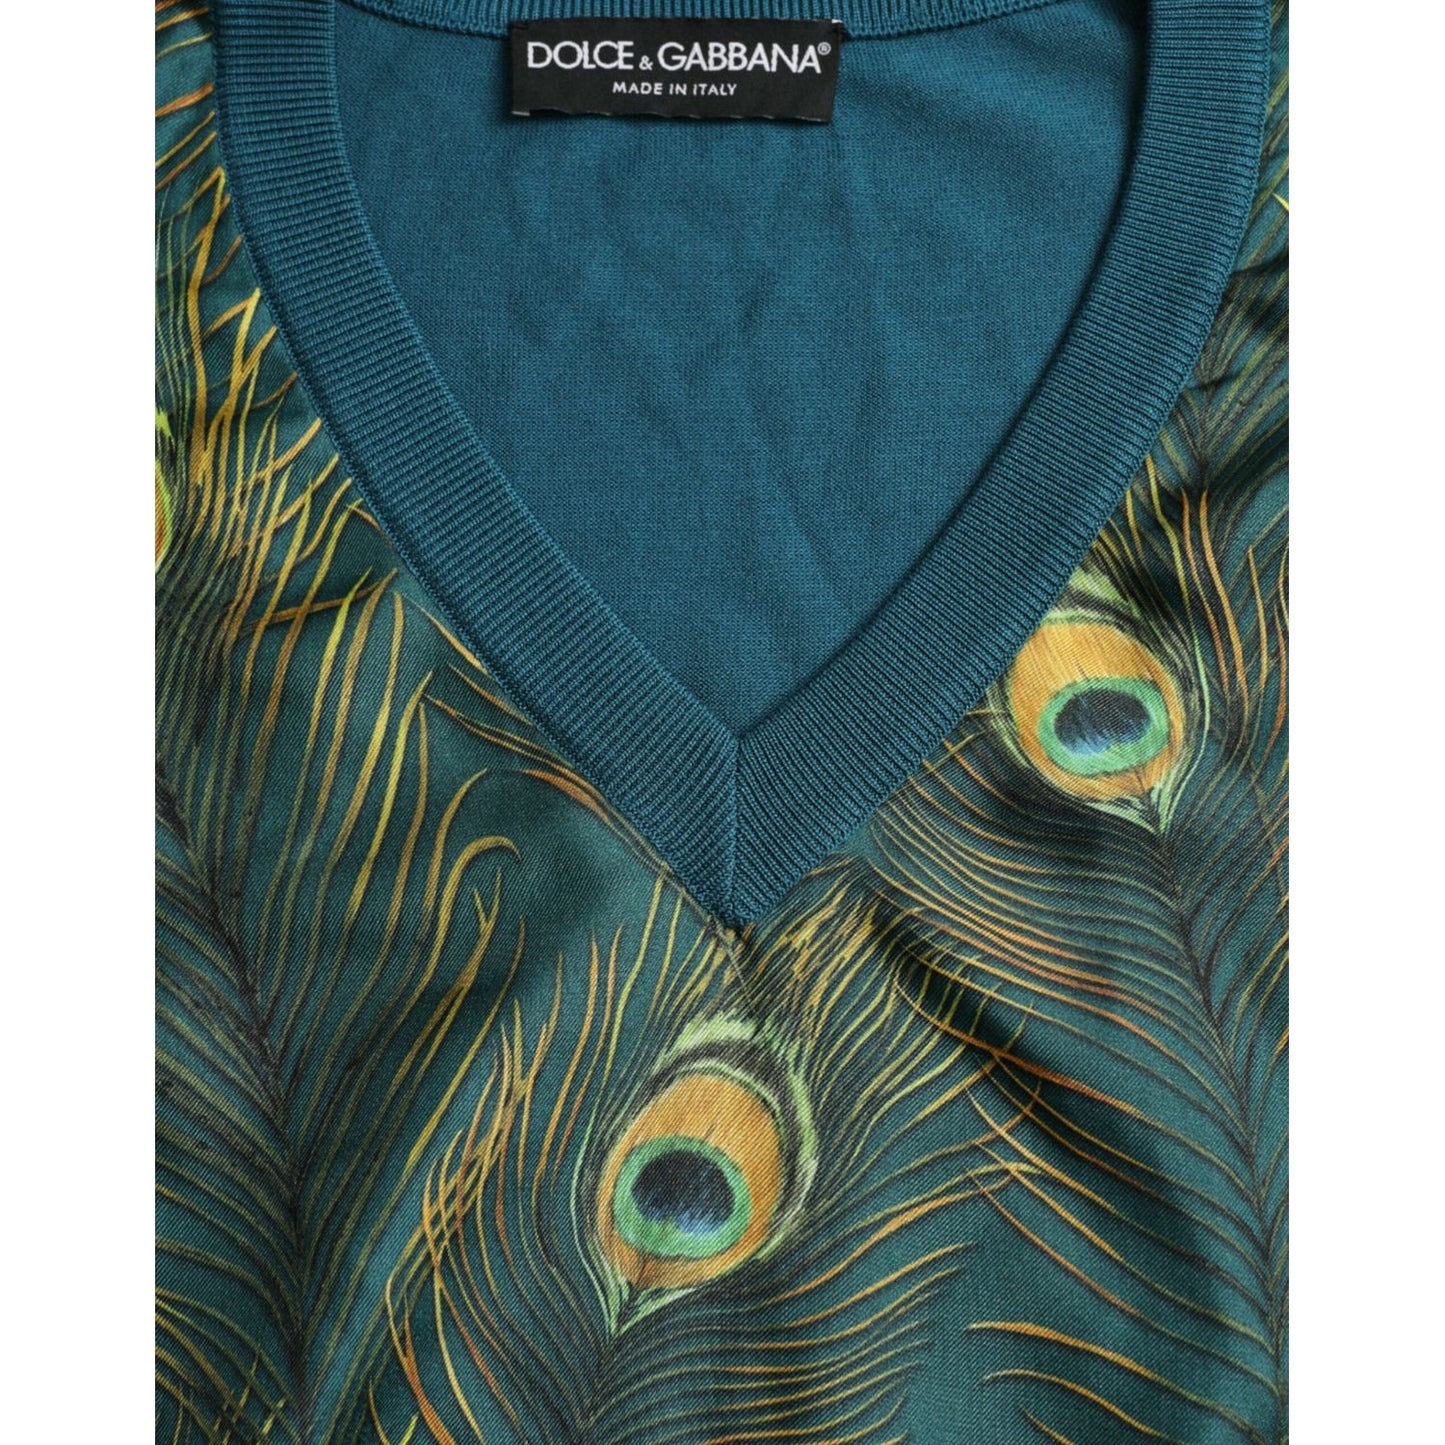 Dolce & Gabbana Silk V-Neck Peacock Feather Sweater green-peacock-feather-pullover-sweater